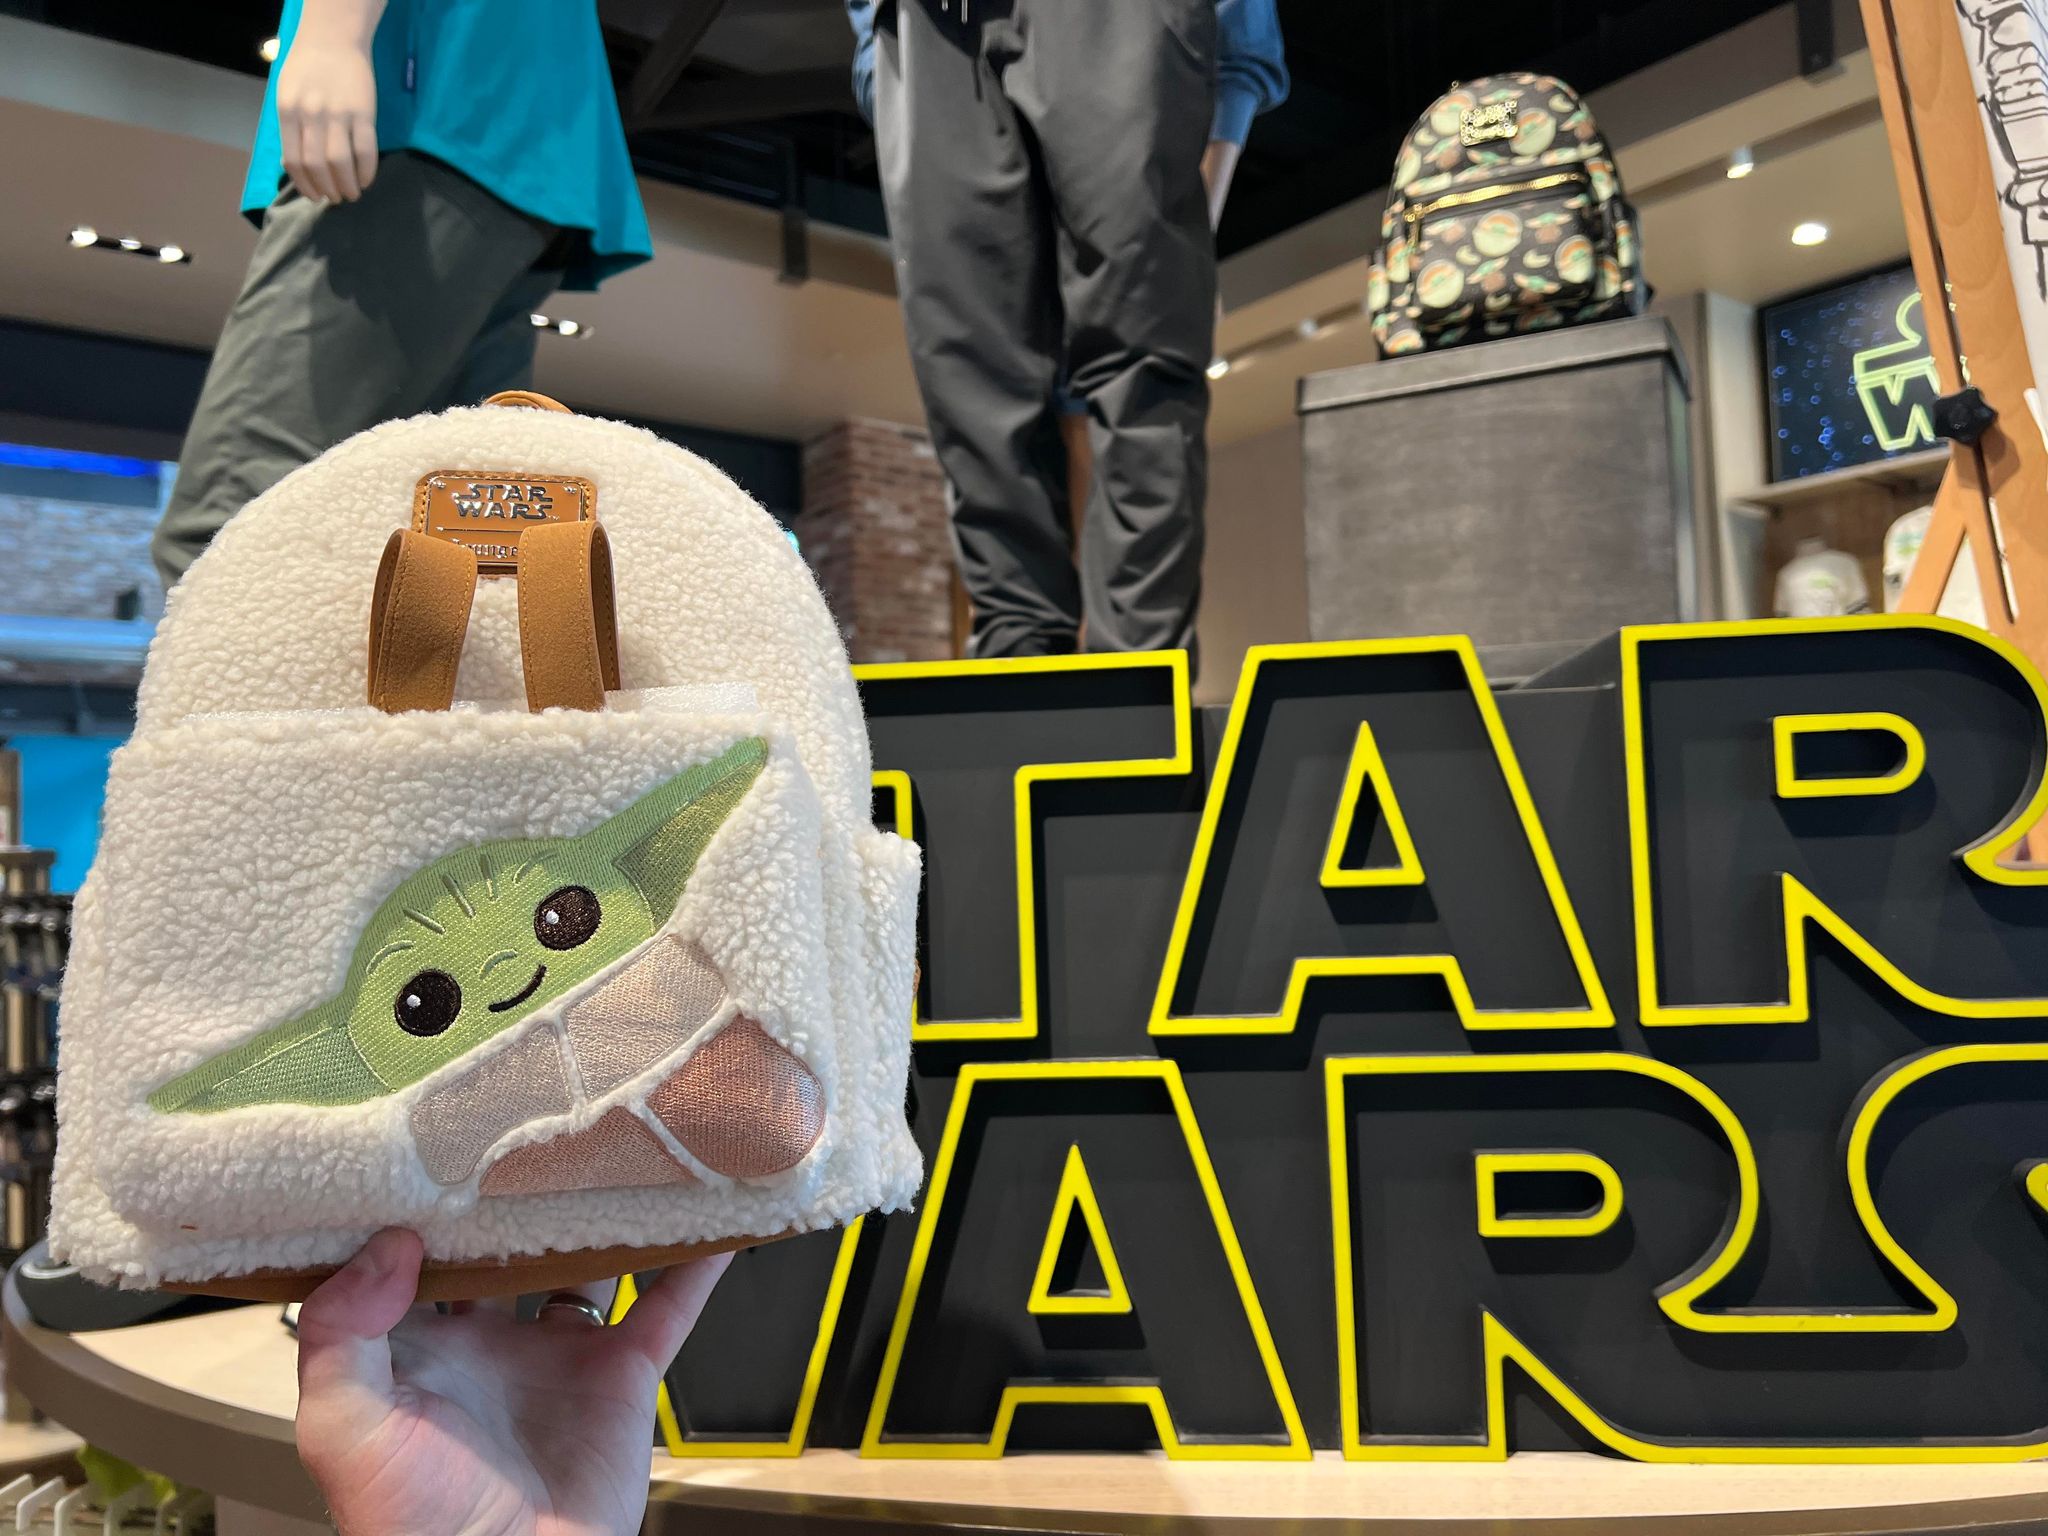 LEGO Yoda's Galaxy Tour with Grogu Bag Tag - Sam's Club